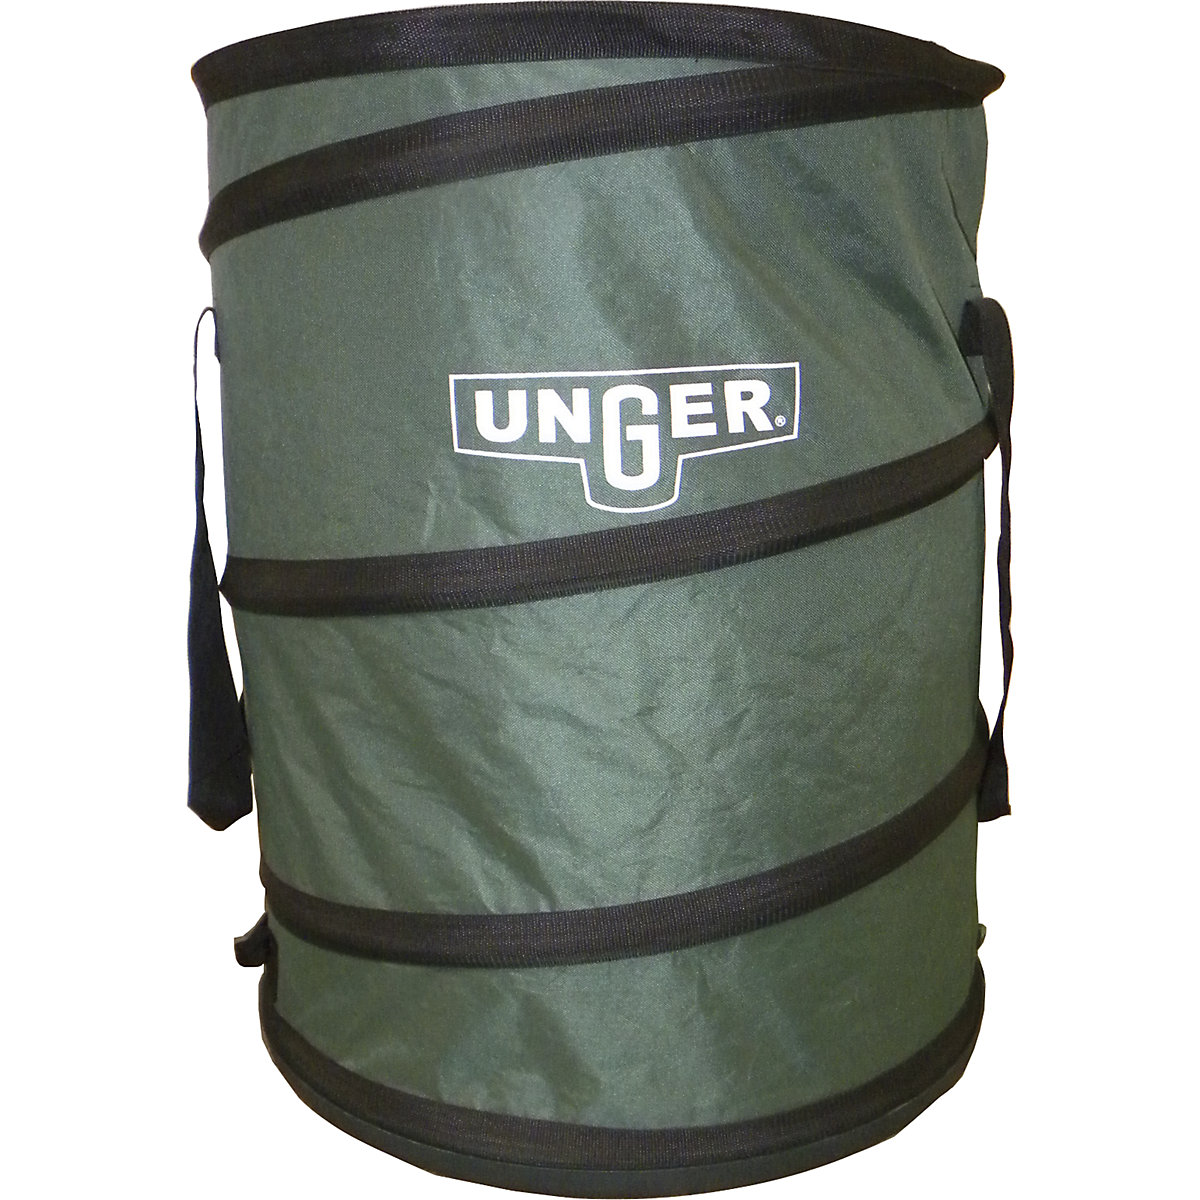 Pop-up garden sack - Unger